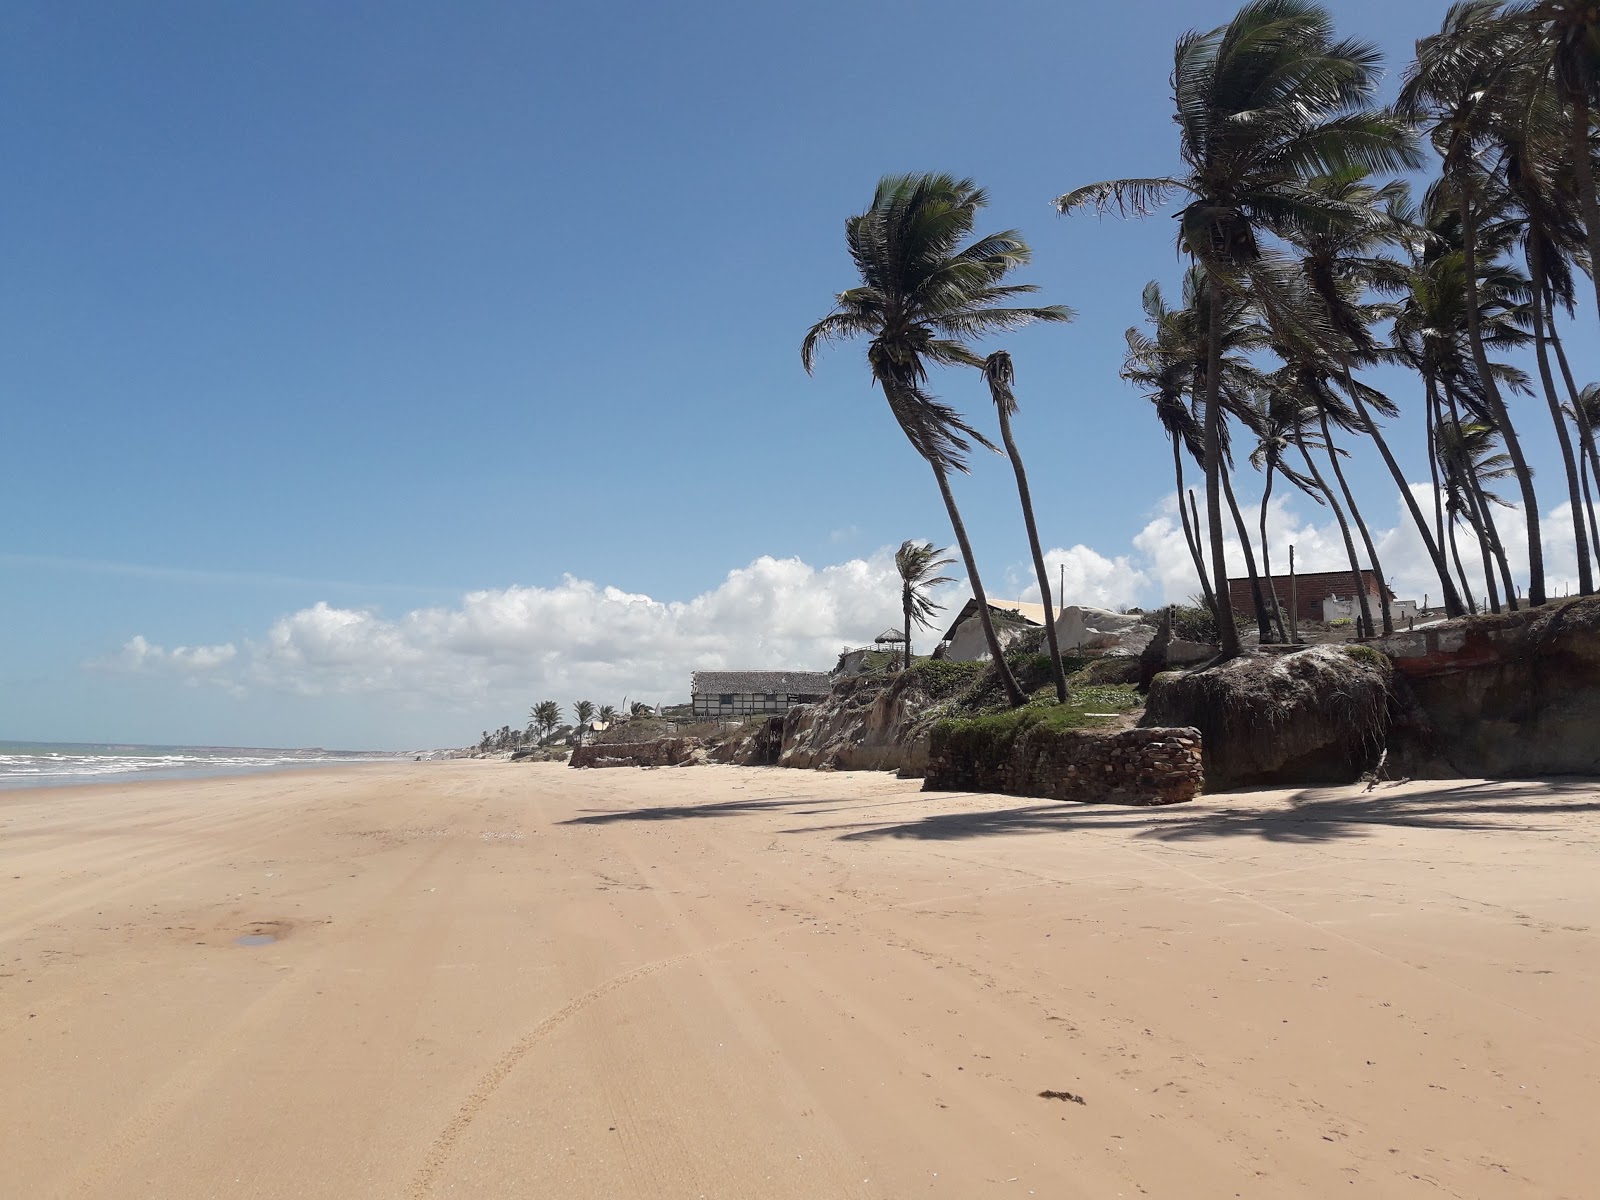 奎沙巴二海滩的照片 带有明亮的沙子表面